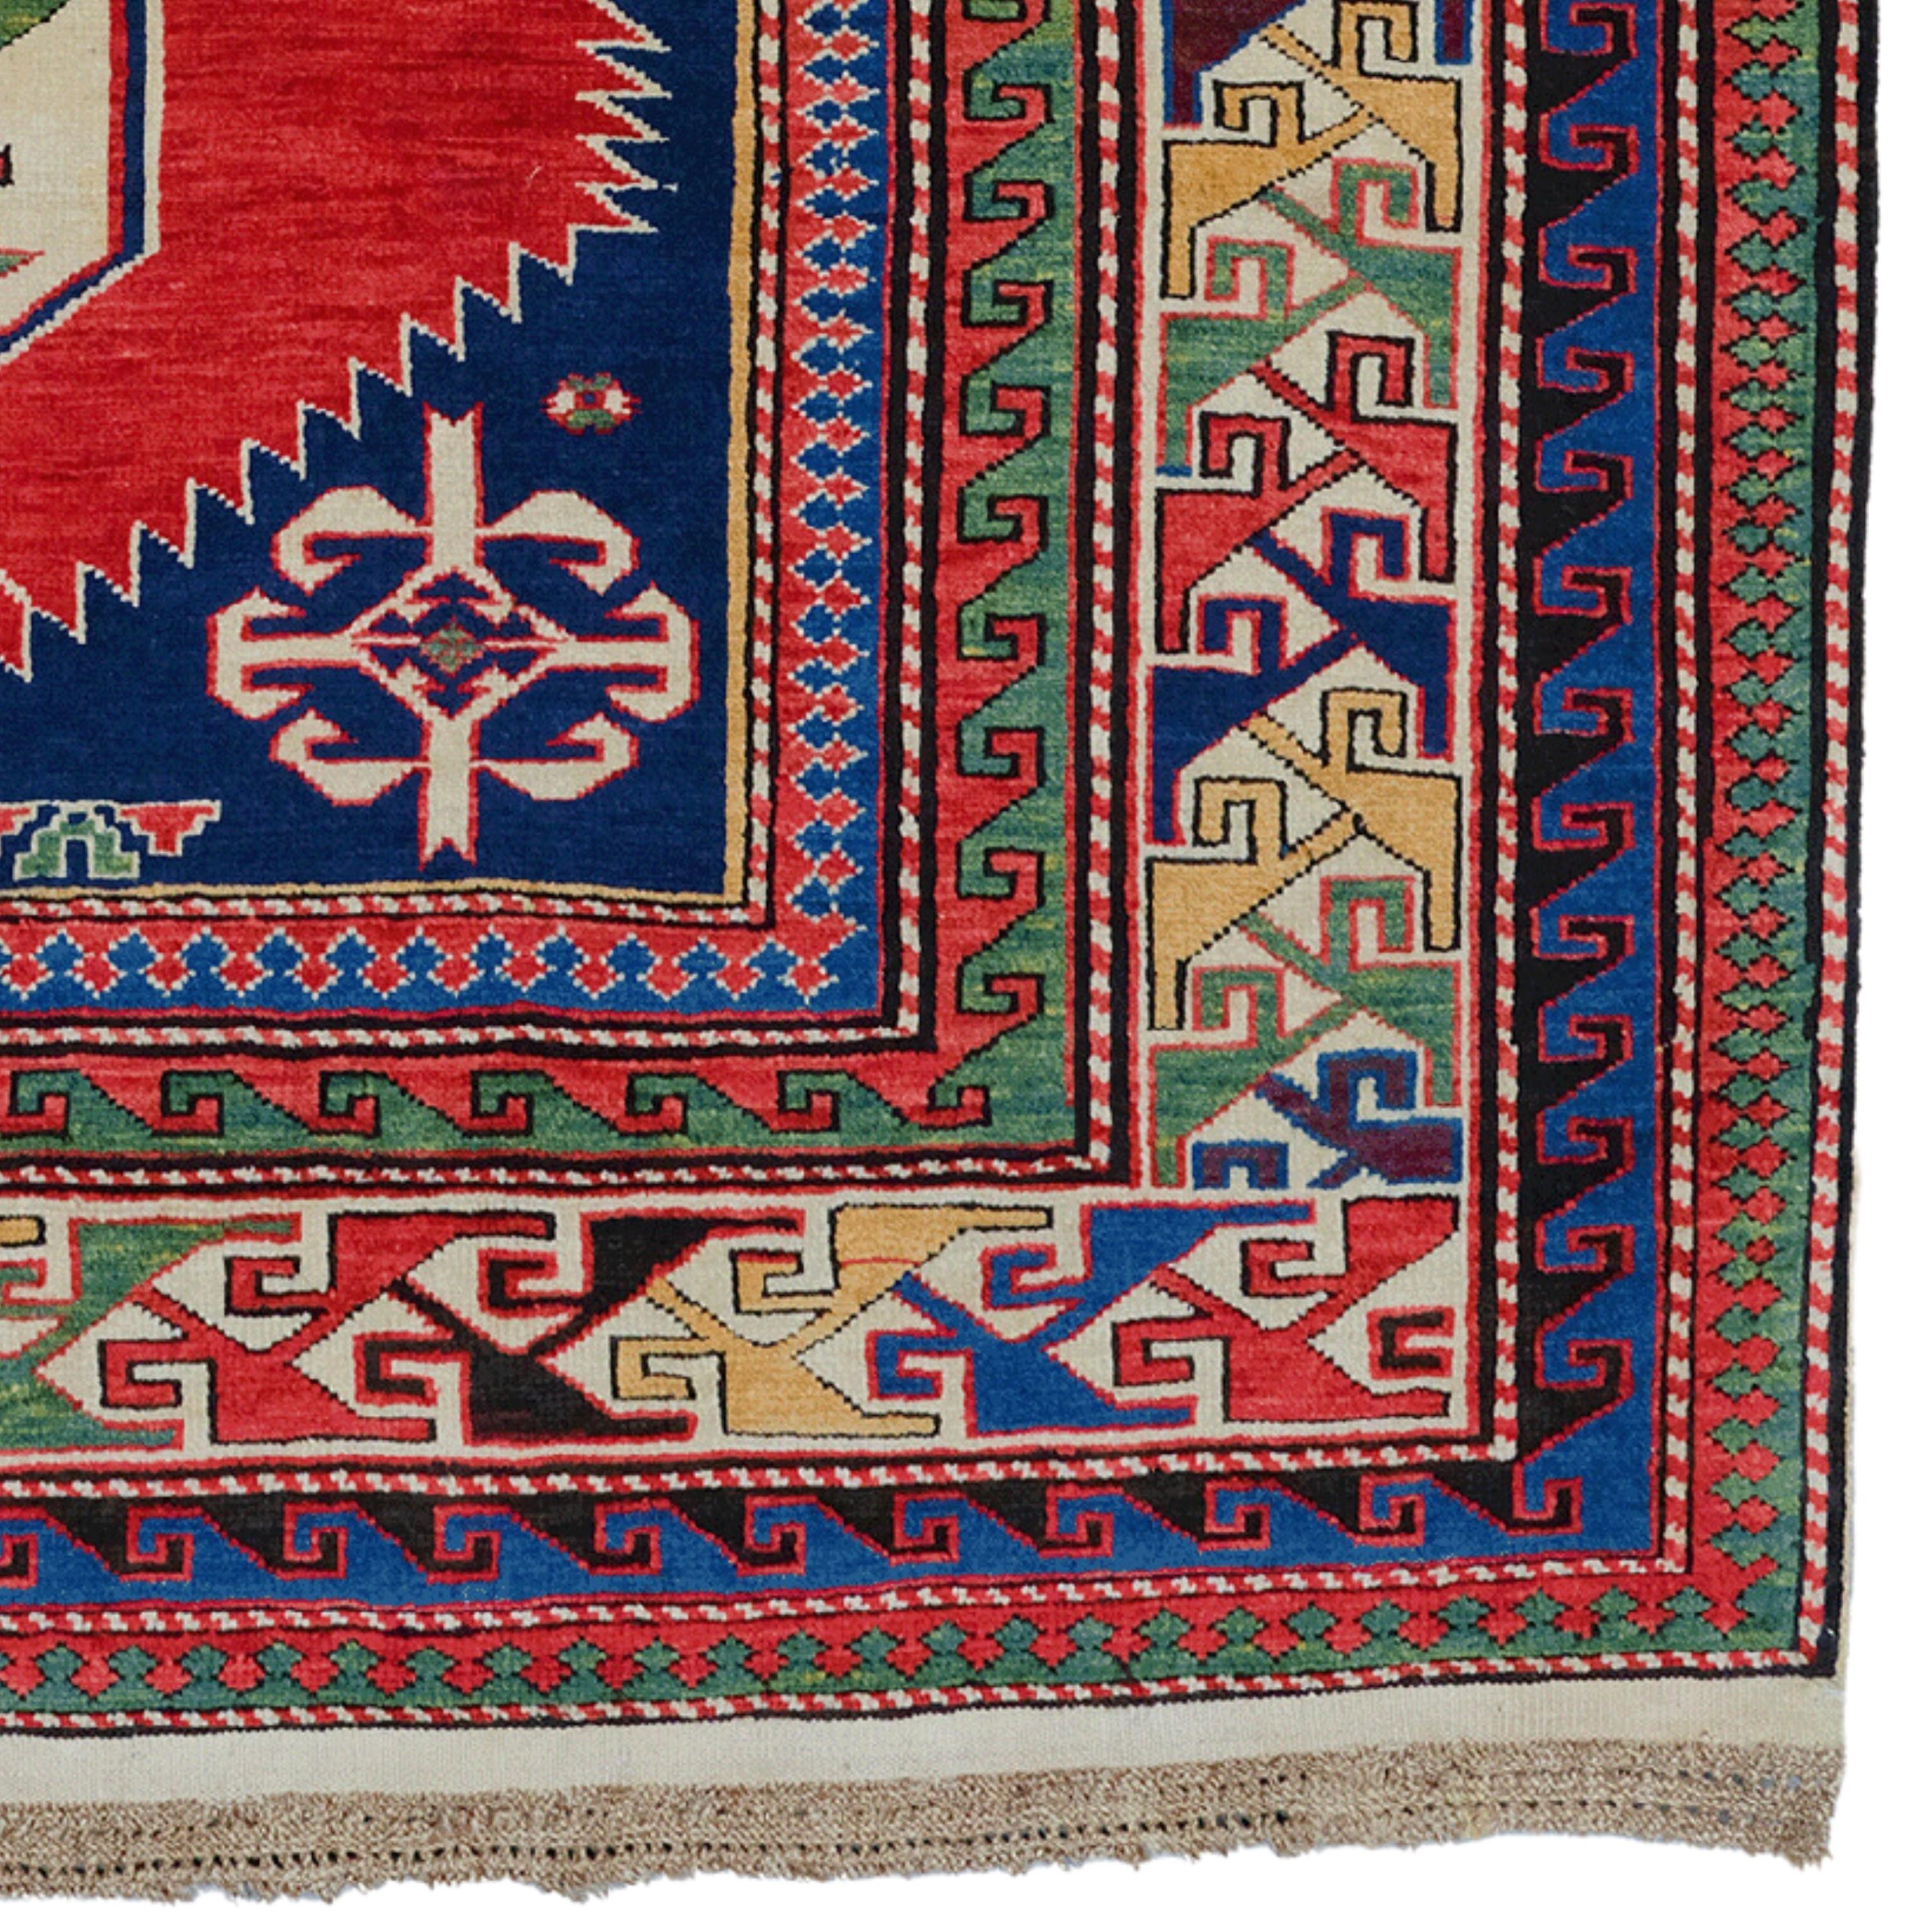 Mitte des 19. Jahrhunderts Schirwan-Karagaschli-Teppich

Dieser exquisite antike kaukasische Schirwan-Teppich ist ein Kunstwerk aus der Mitte des 19. Jahrhunderts. Mit seiner reichen Farbpalette und den komplizierten Mustern ist dieses Stück